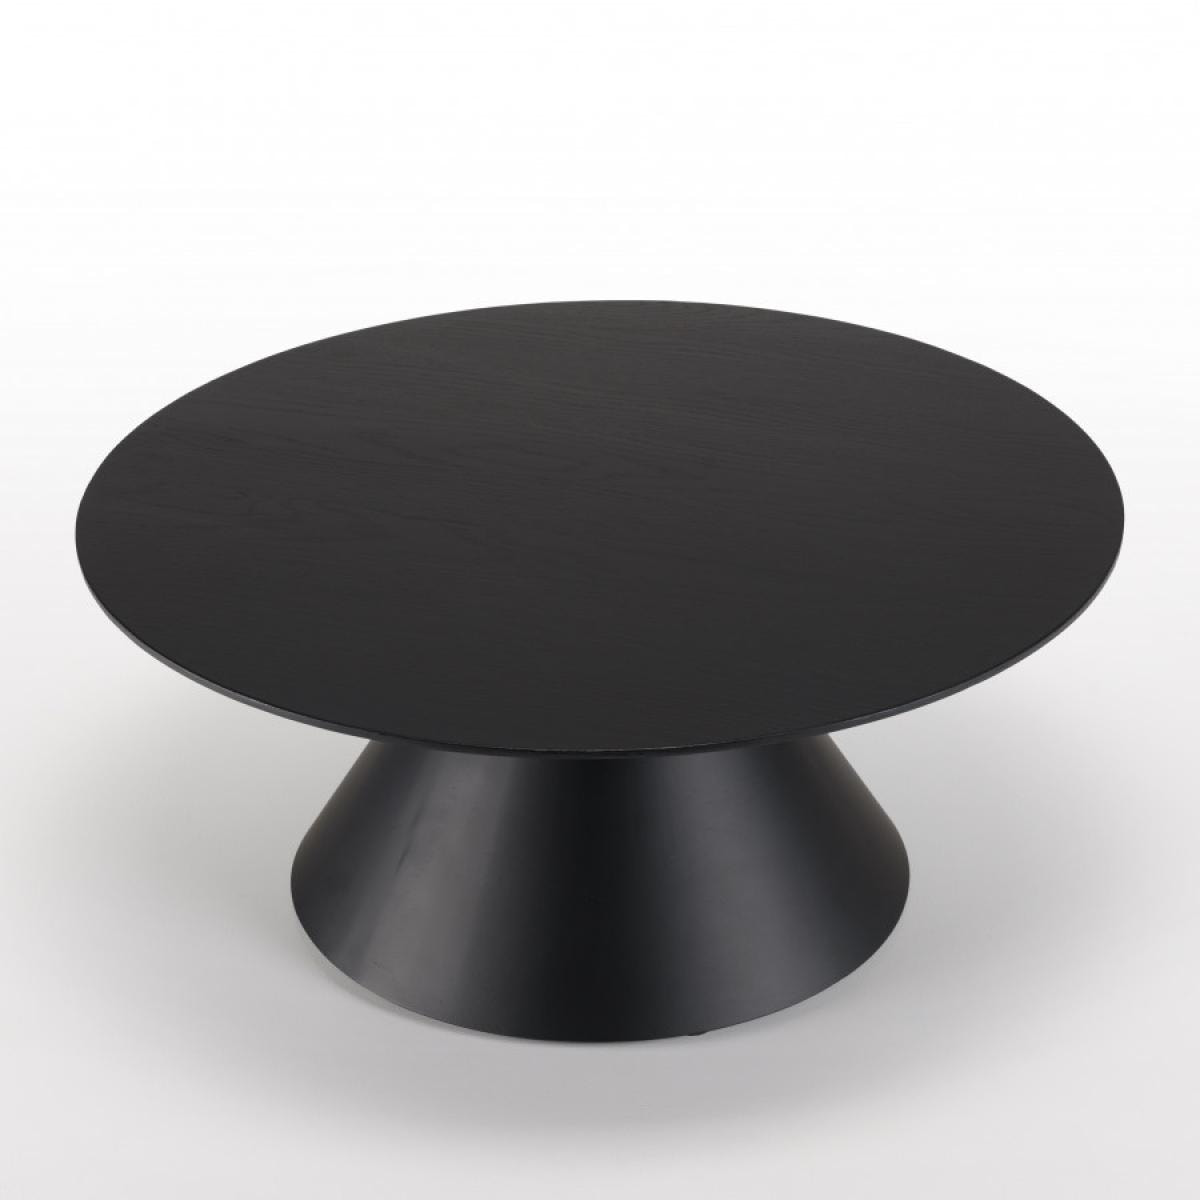 DALY - Table basse ronde noire 78x78cm pied conique métal